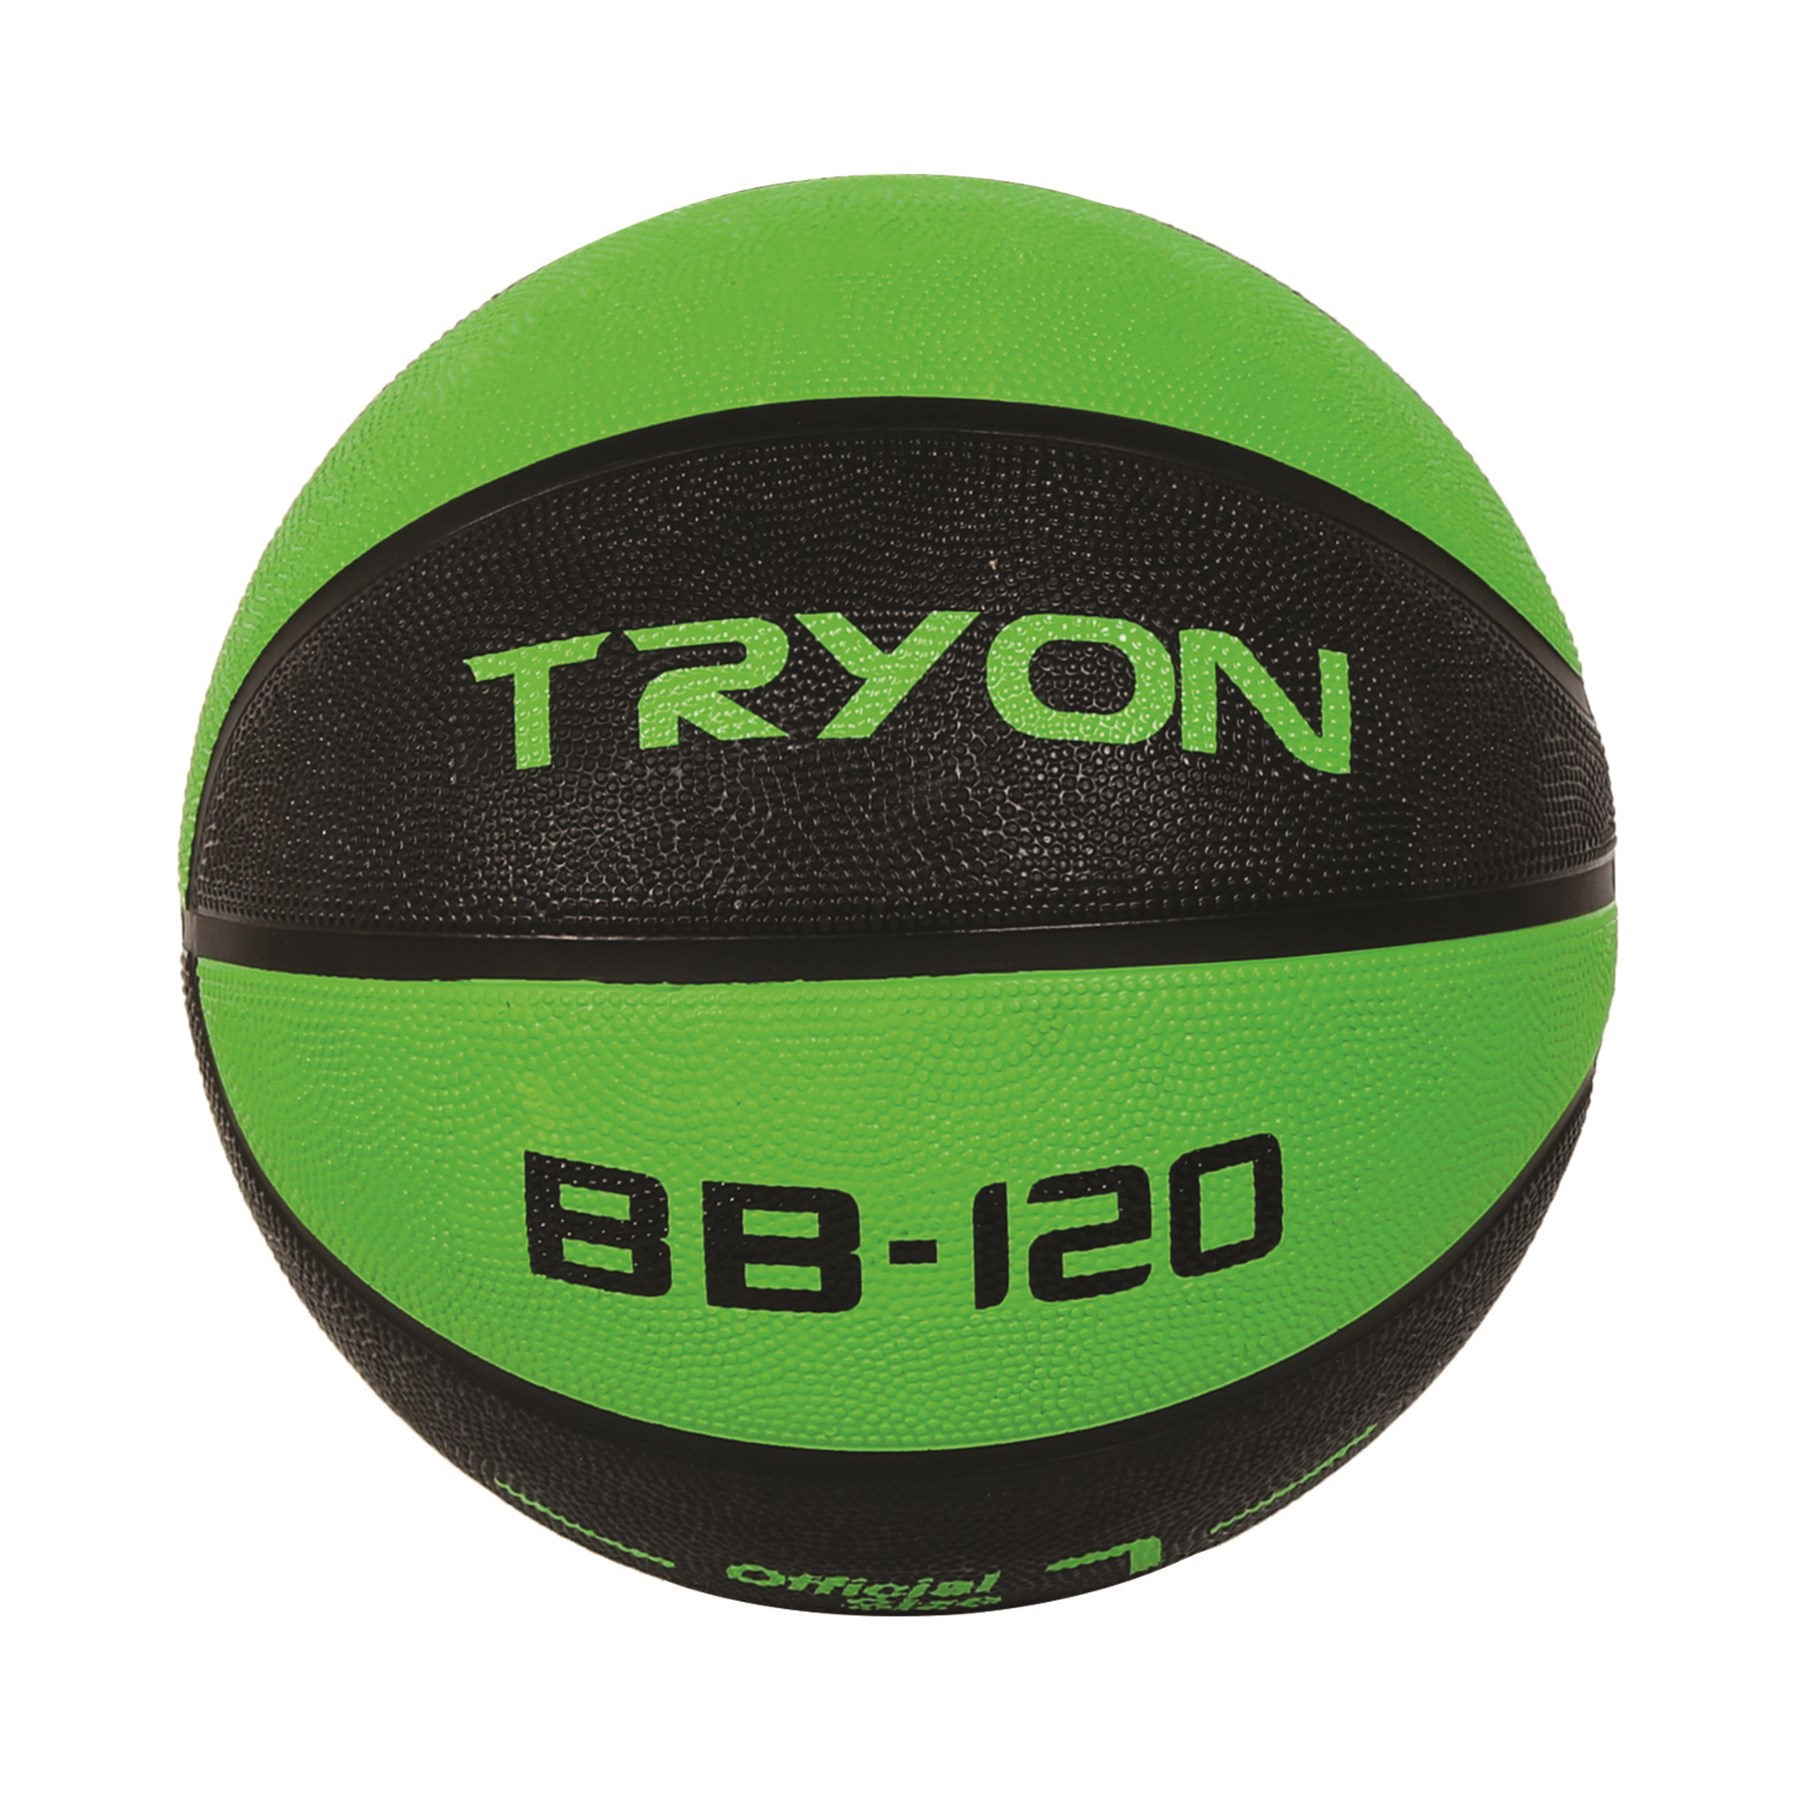 Tryon Basketbol Topu Bb-120-7